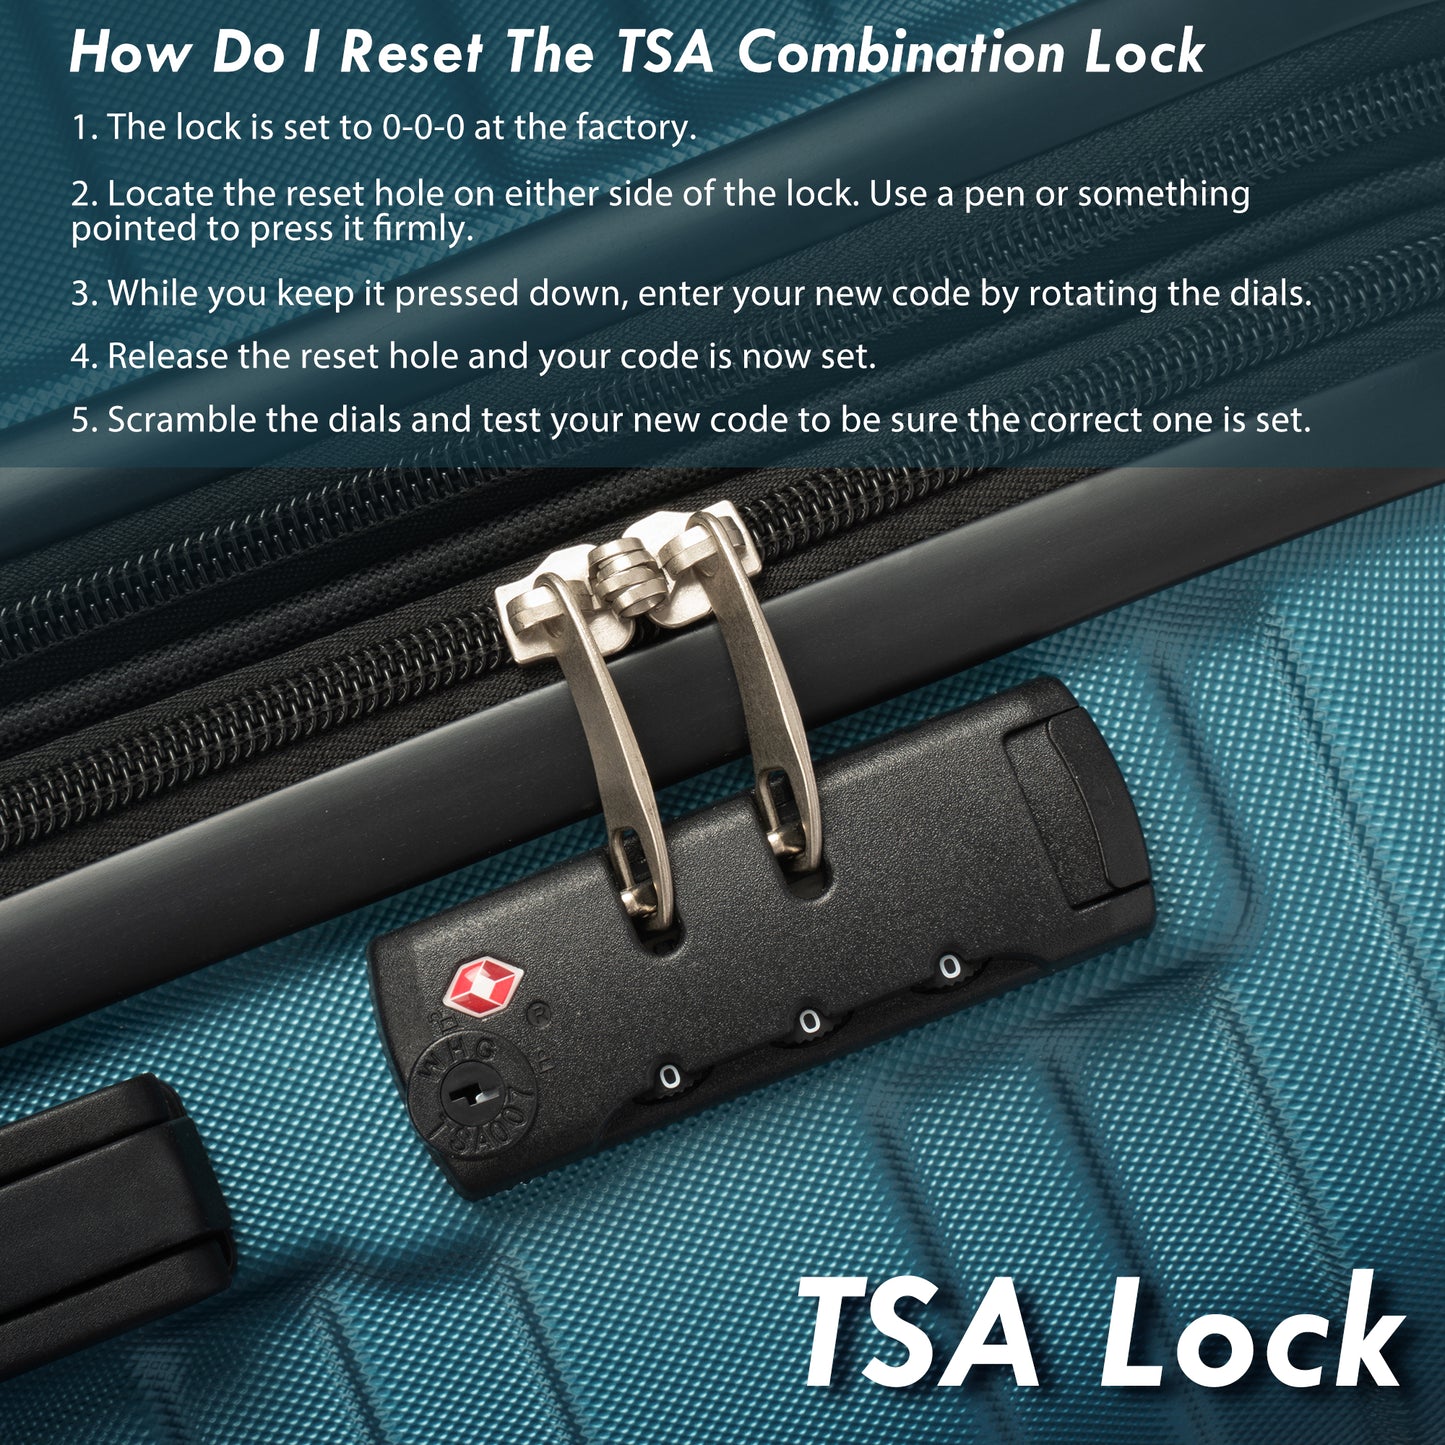 Ensembles de bagages rigides, valise à roulettes 3 pièces avec serrure TSA légère 20''24''28'' bleu marine + ABS